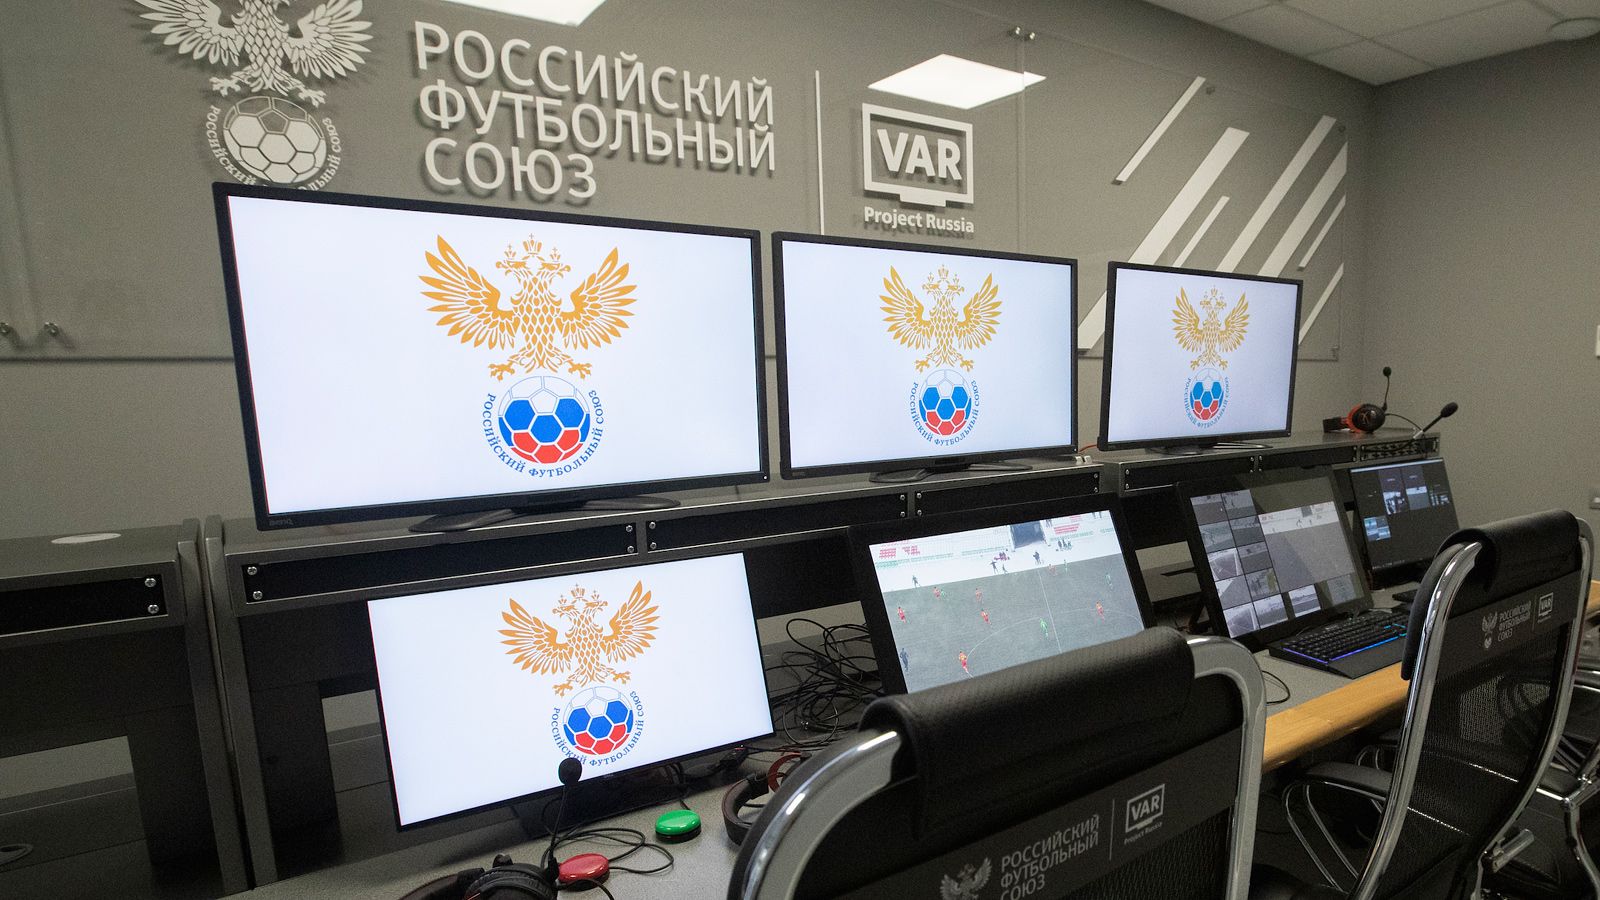 Галактионов раскритиковал работу VAR в России после победы над «Ростовом»